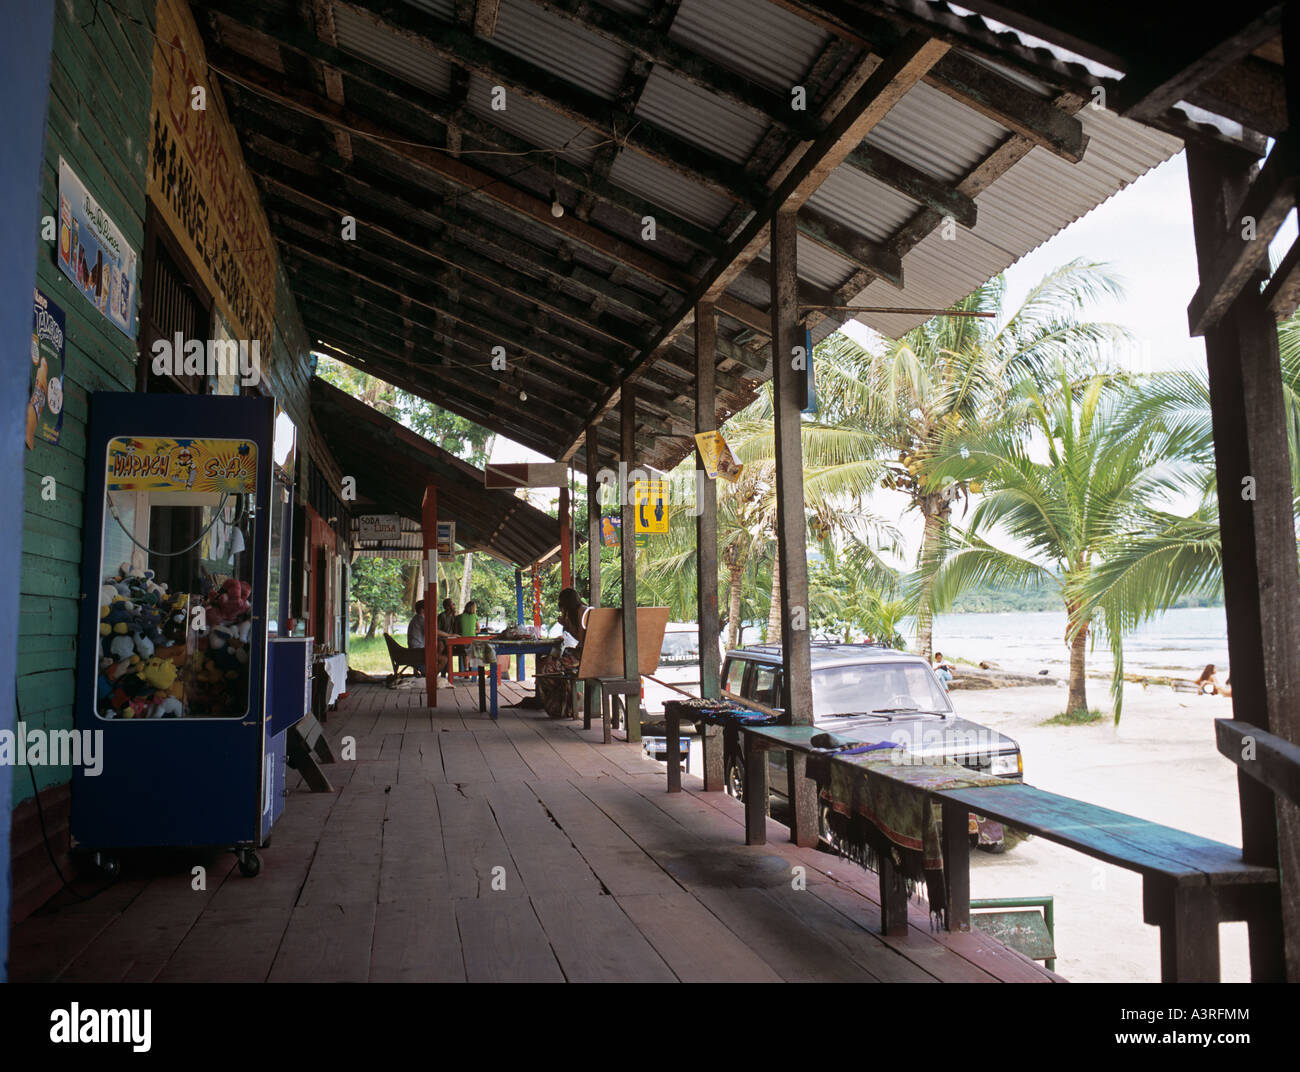 GENERAL STORE CAFE lo scambio di denaro con veranda in legno Puerto Viejo Limon Costa Rica America Centrale Foto Stock